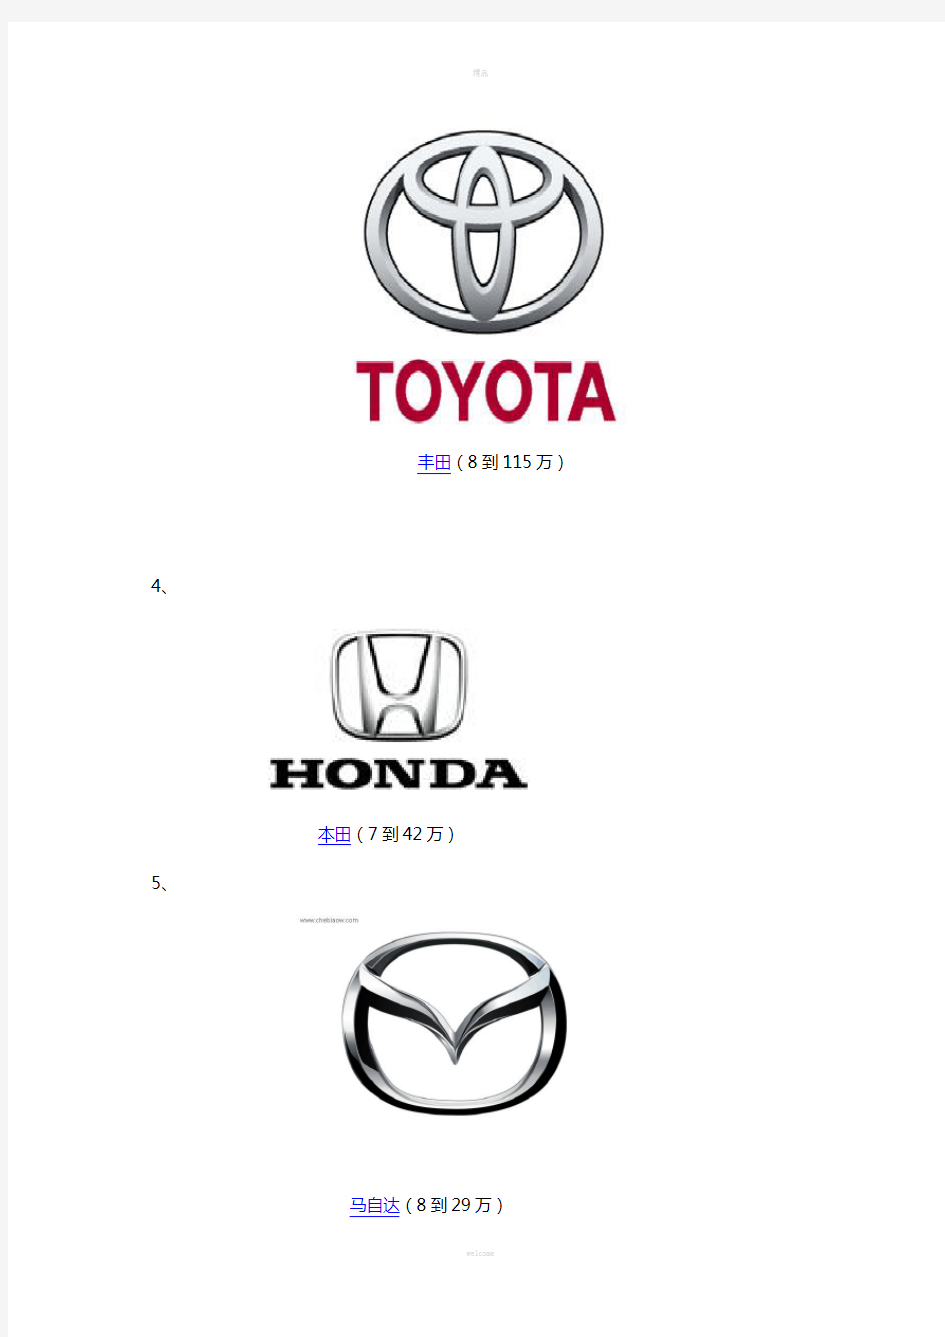 各主要汽车品牌标识及价格范围